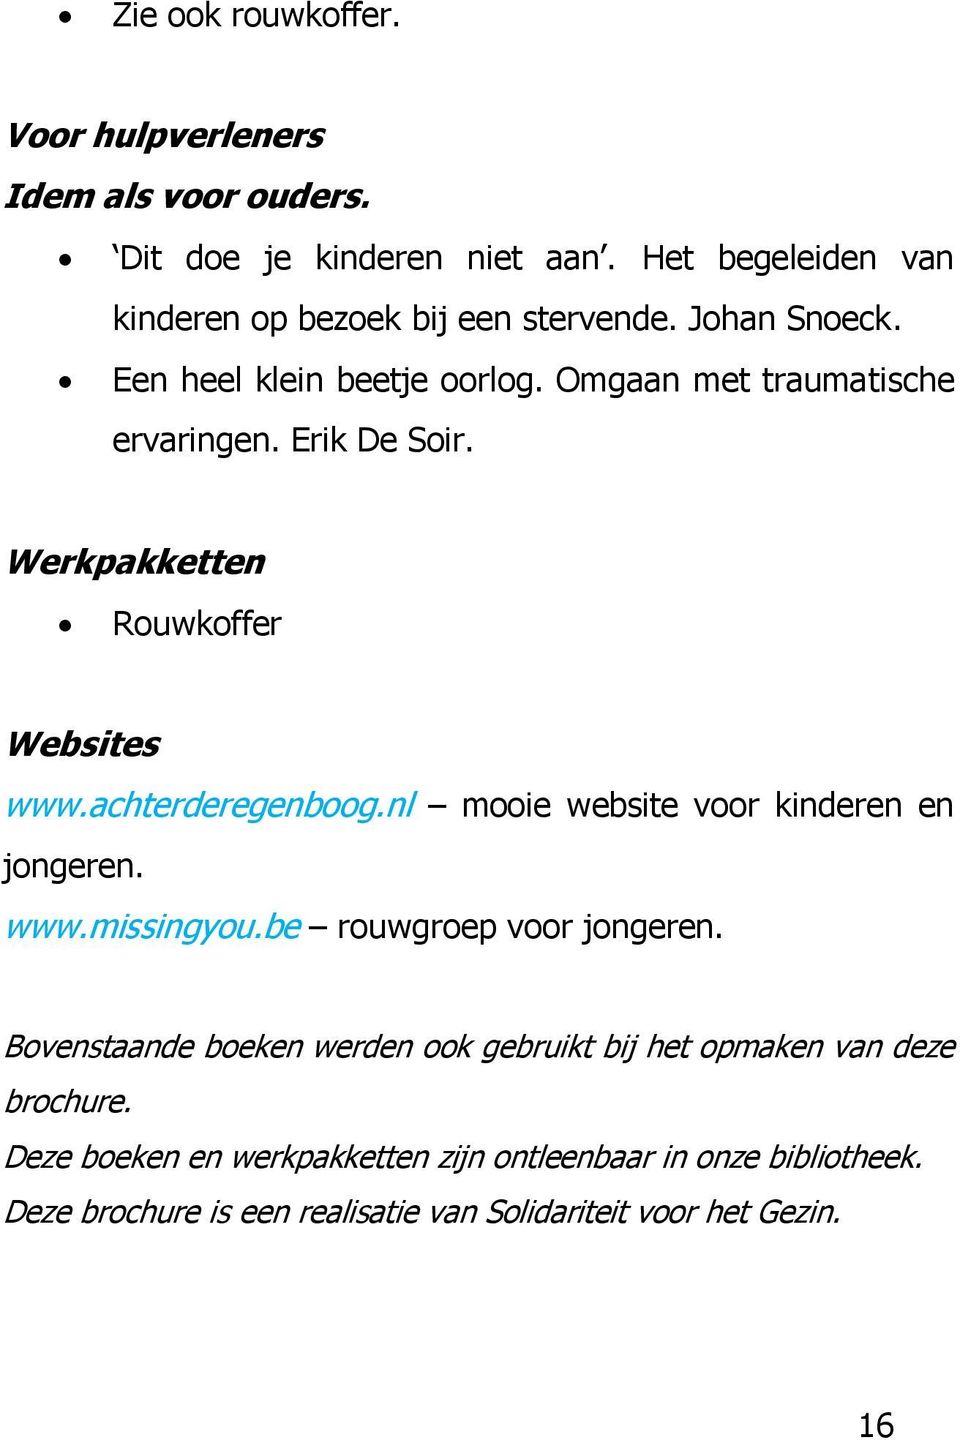 achterderegenboog.nl mooie website voor kinderen en jongeren. www.missingyou.be rouwgroep voor jongeren.